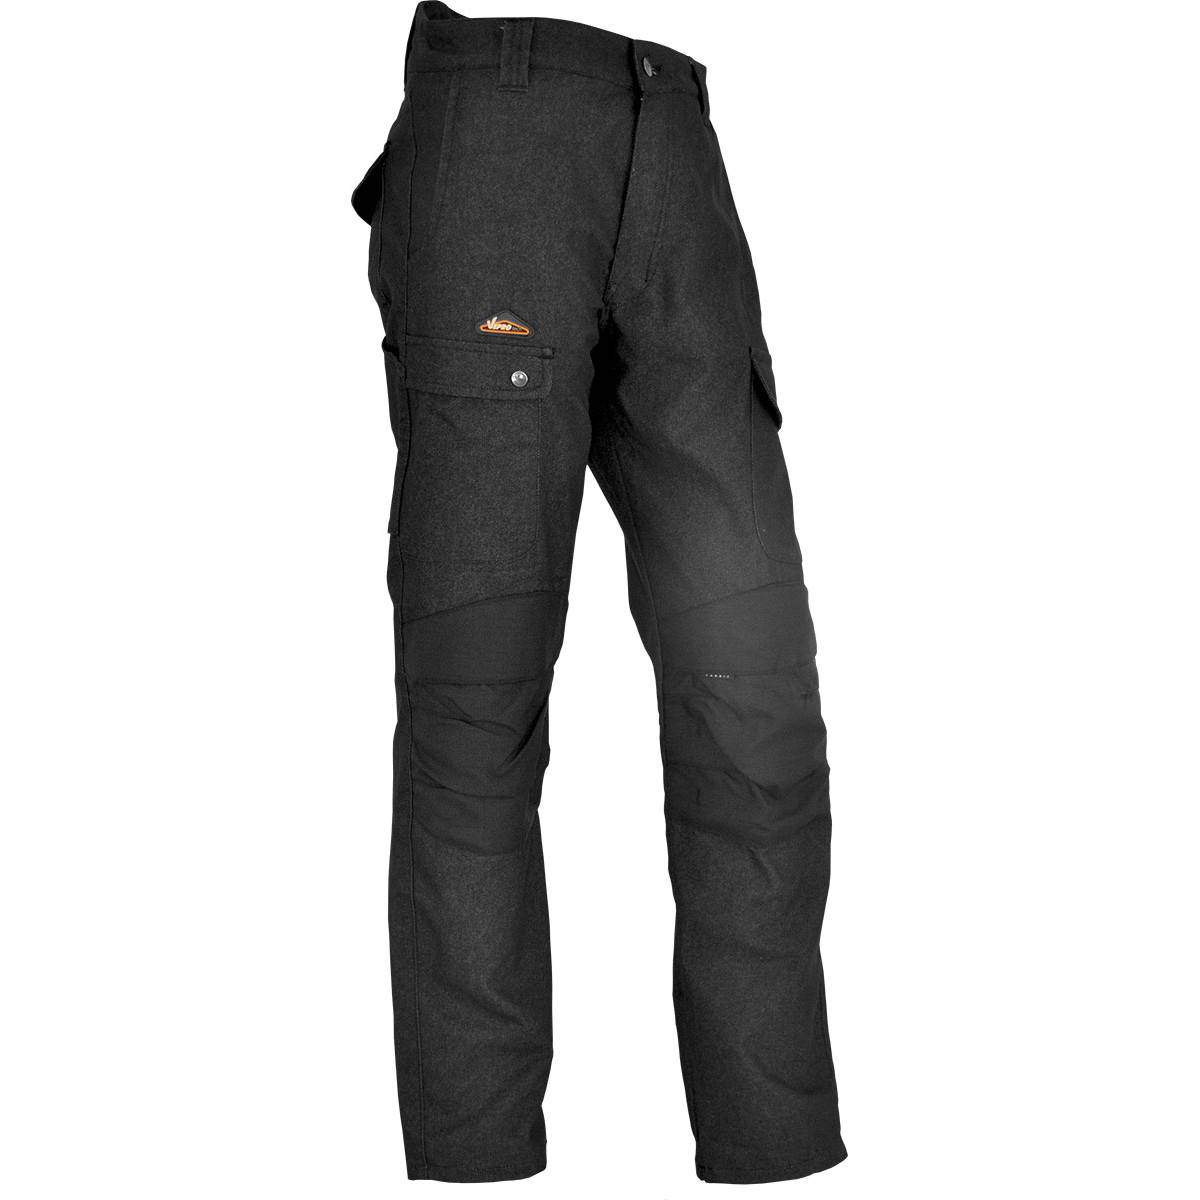 Pantalones de trabajo ENDU talla 48, negros